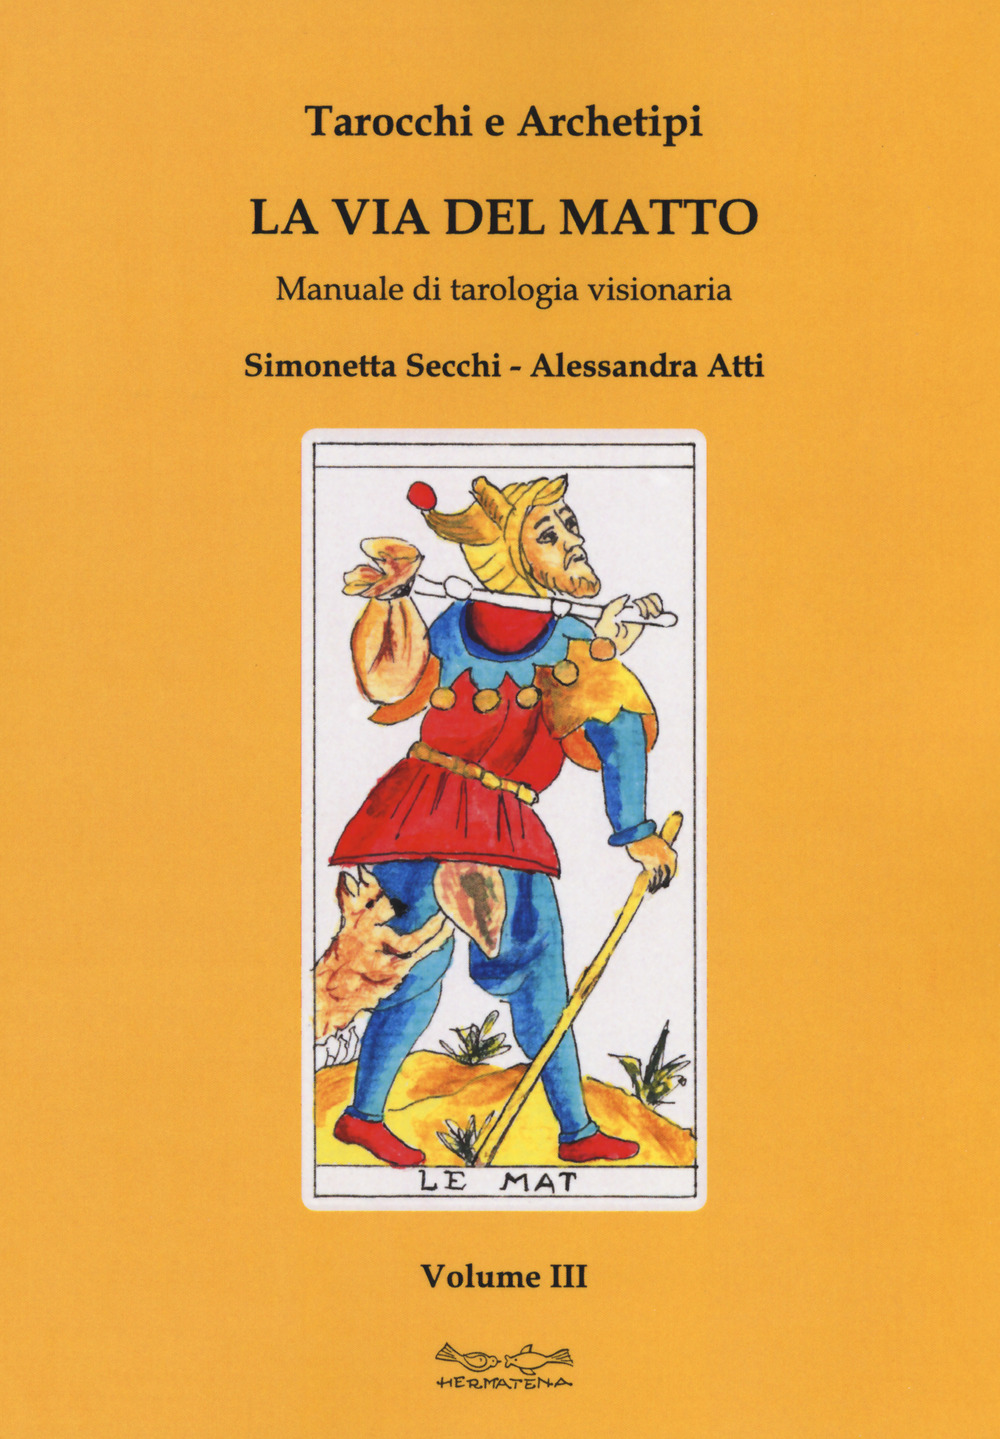 Image of Tarocchi e archetipi. Manuale teorico pratico di tarologia. Vol. 3: via del matto, La.